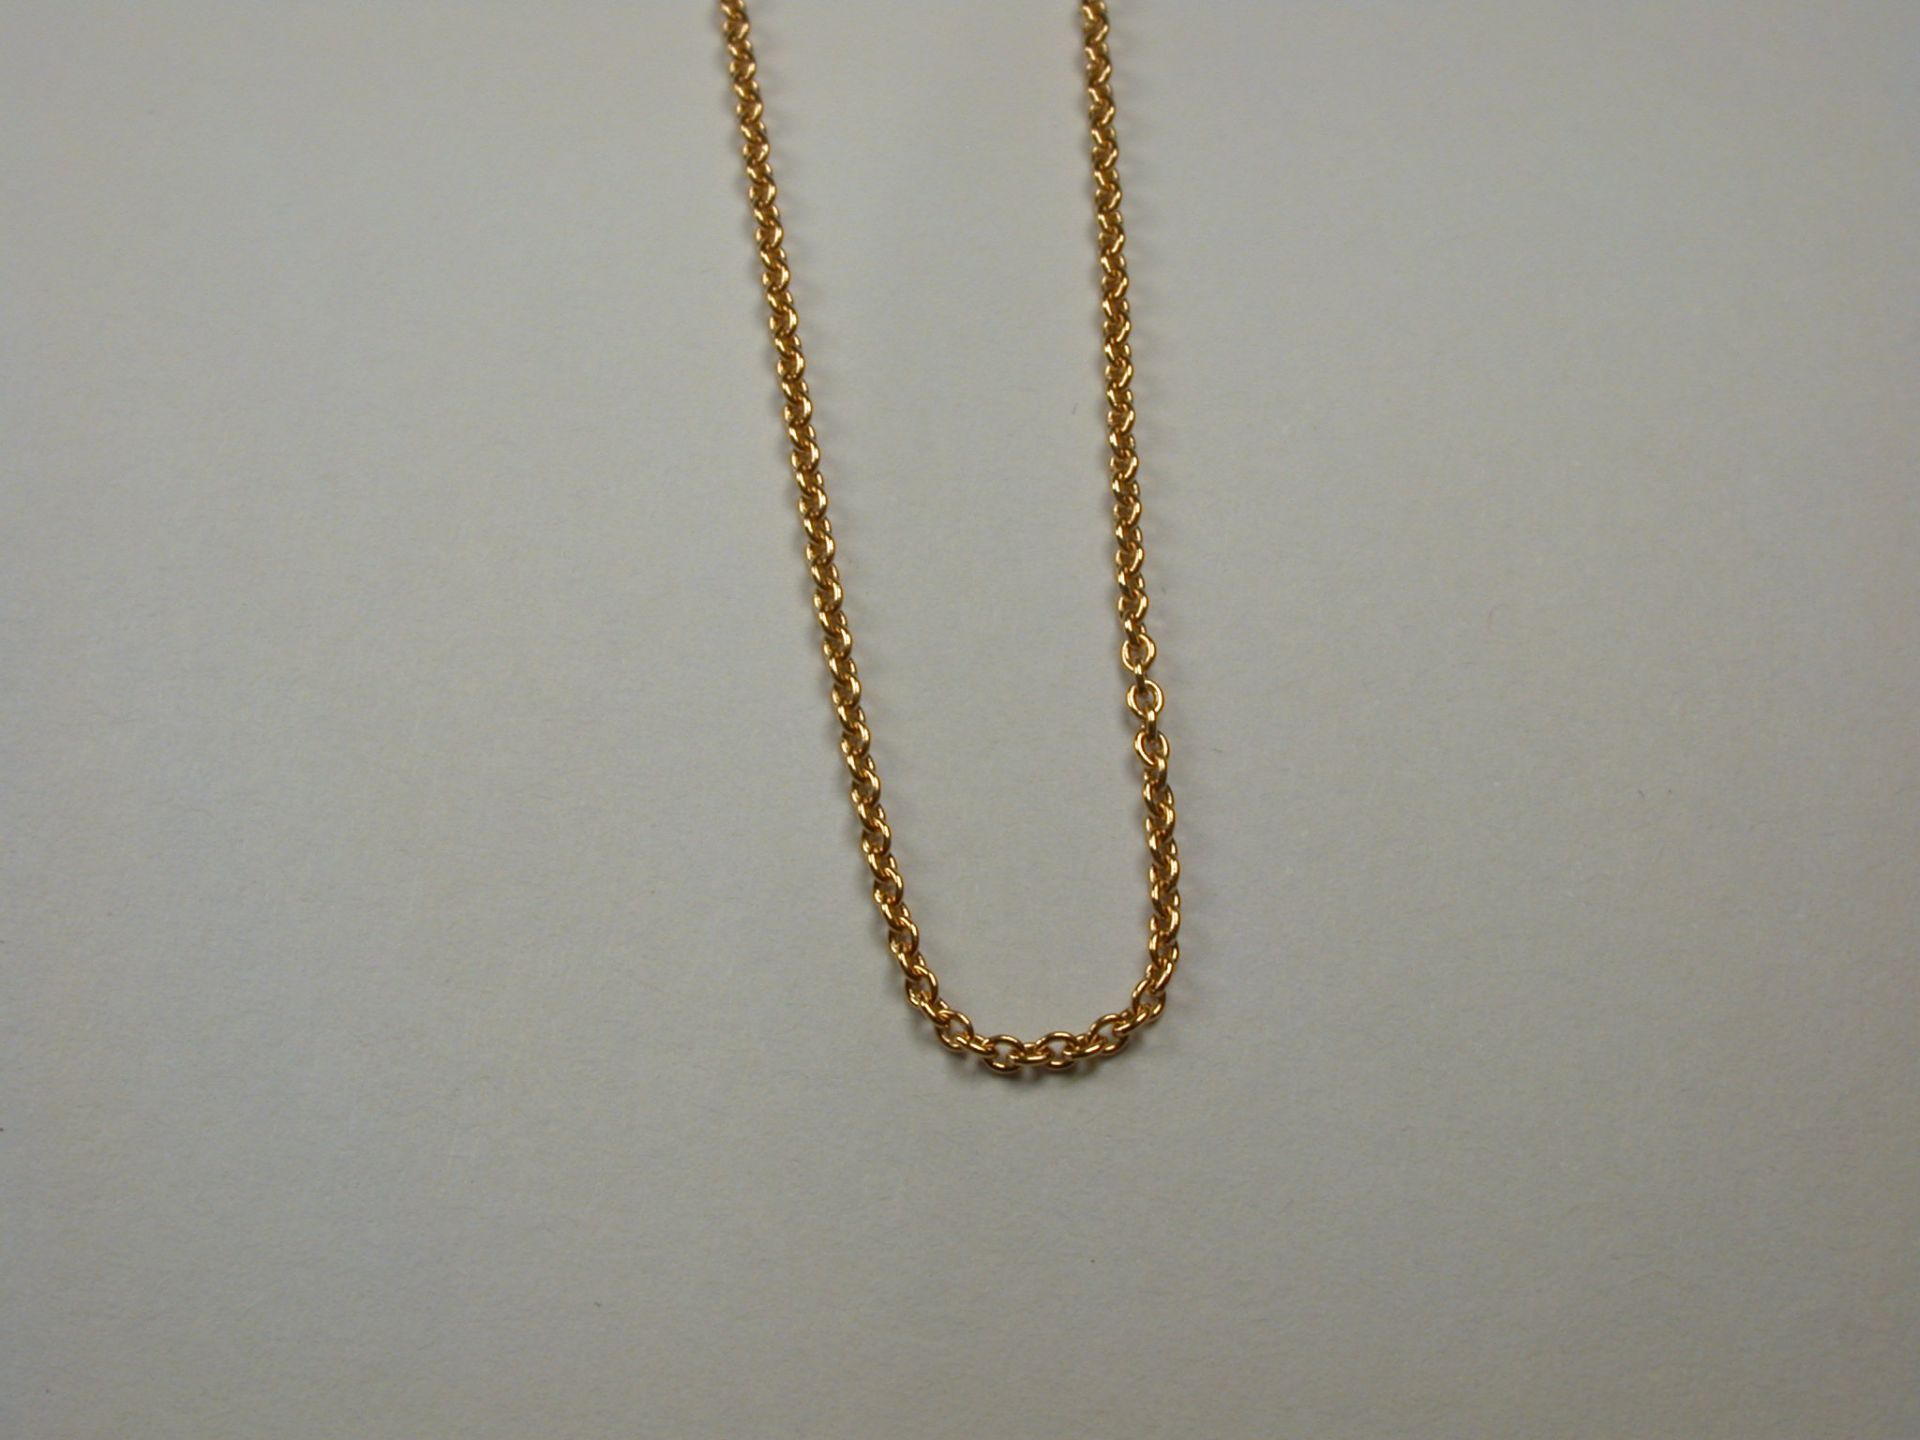 Halskette GG 750 - 42 cm - 2,10 Gramm